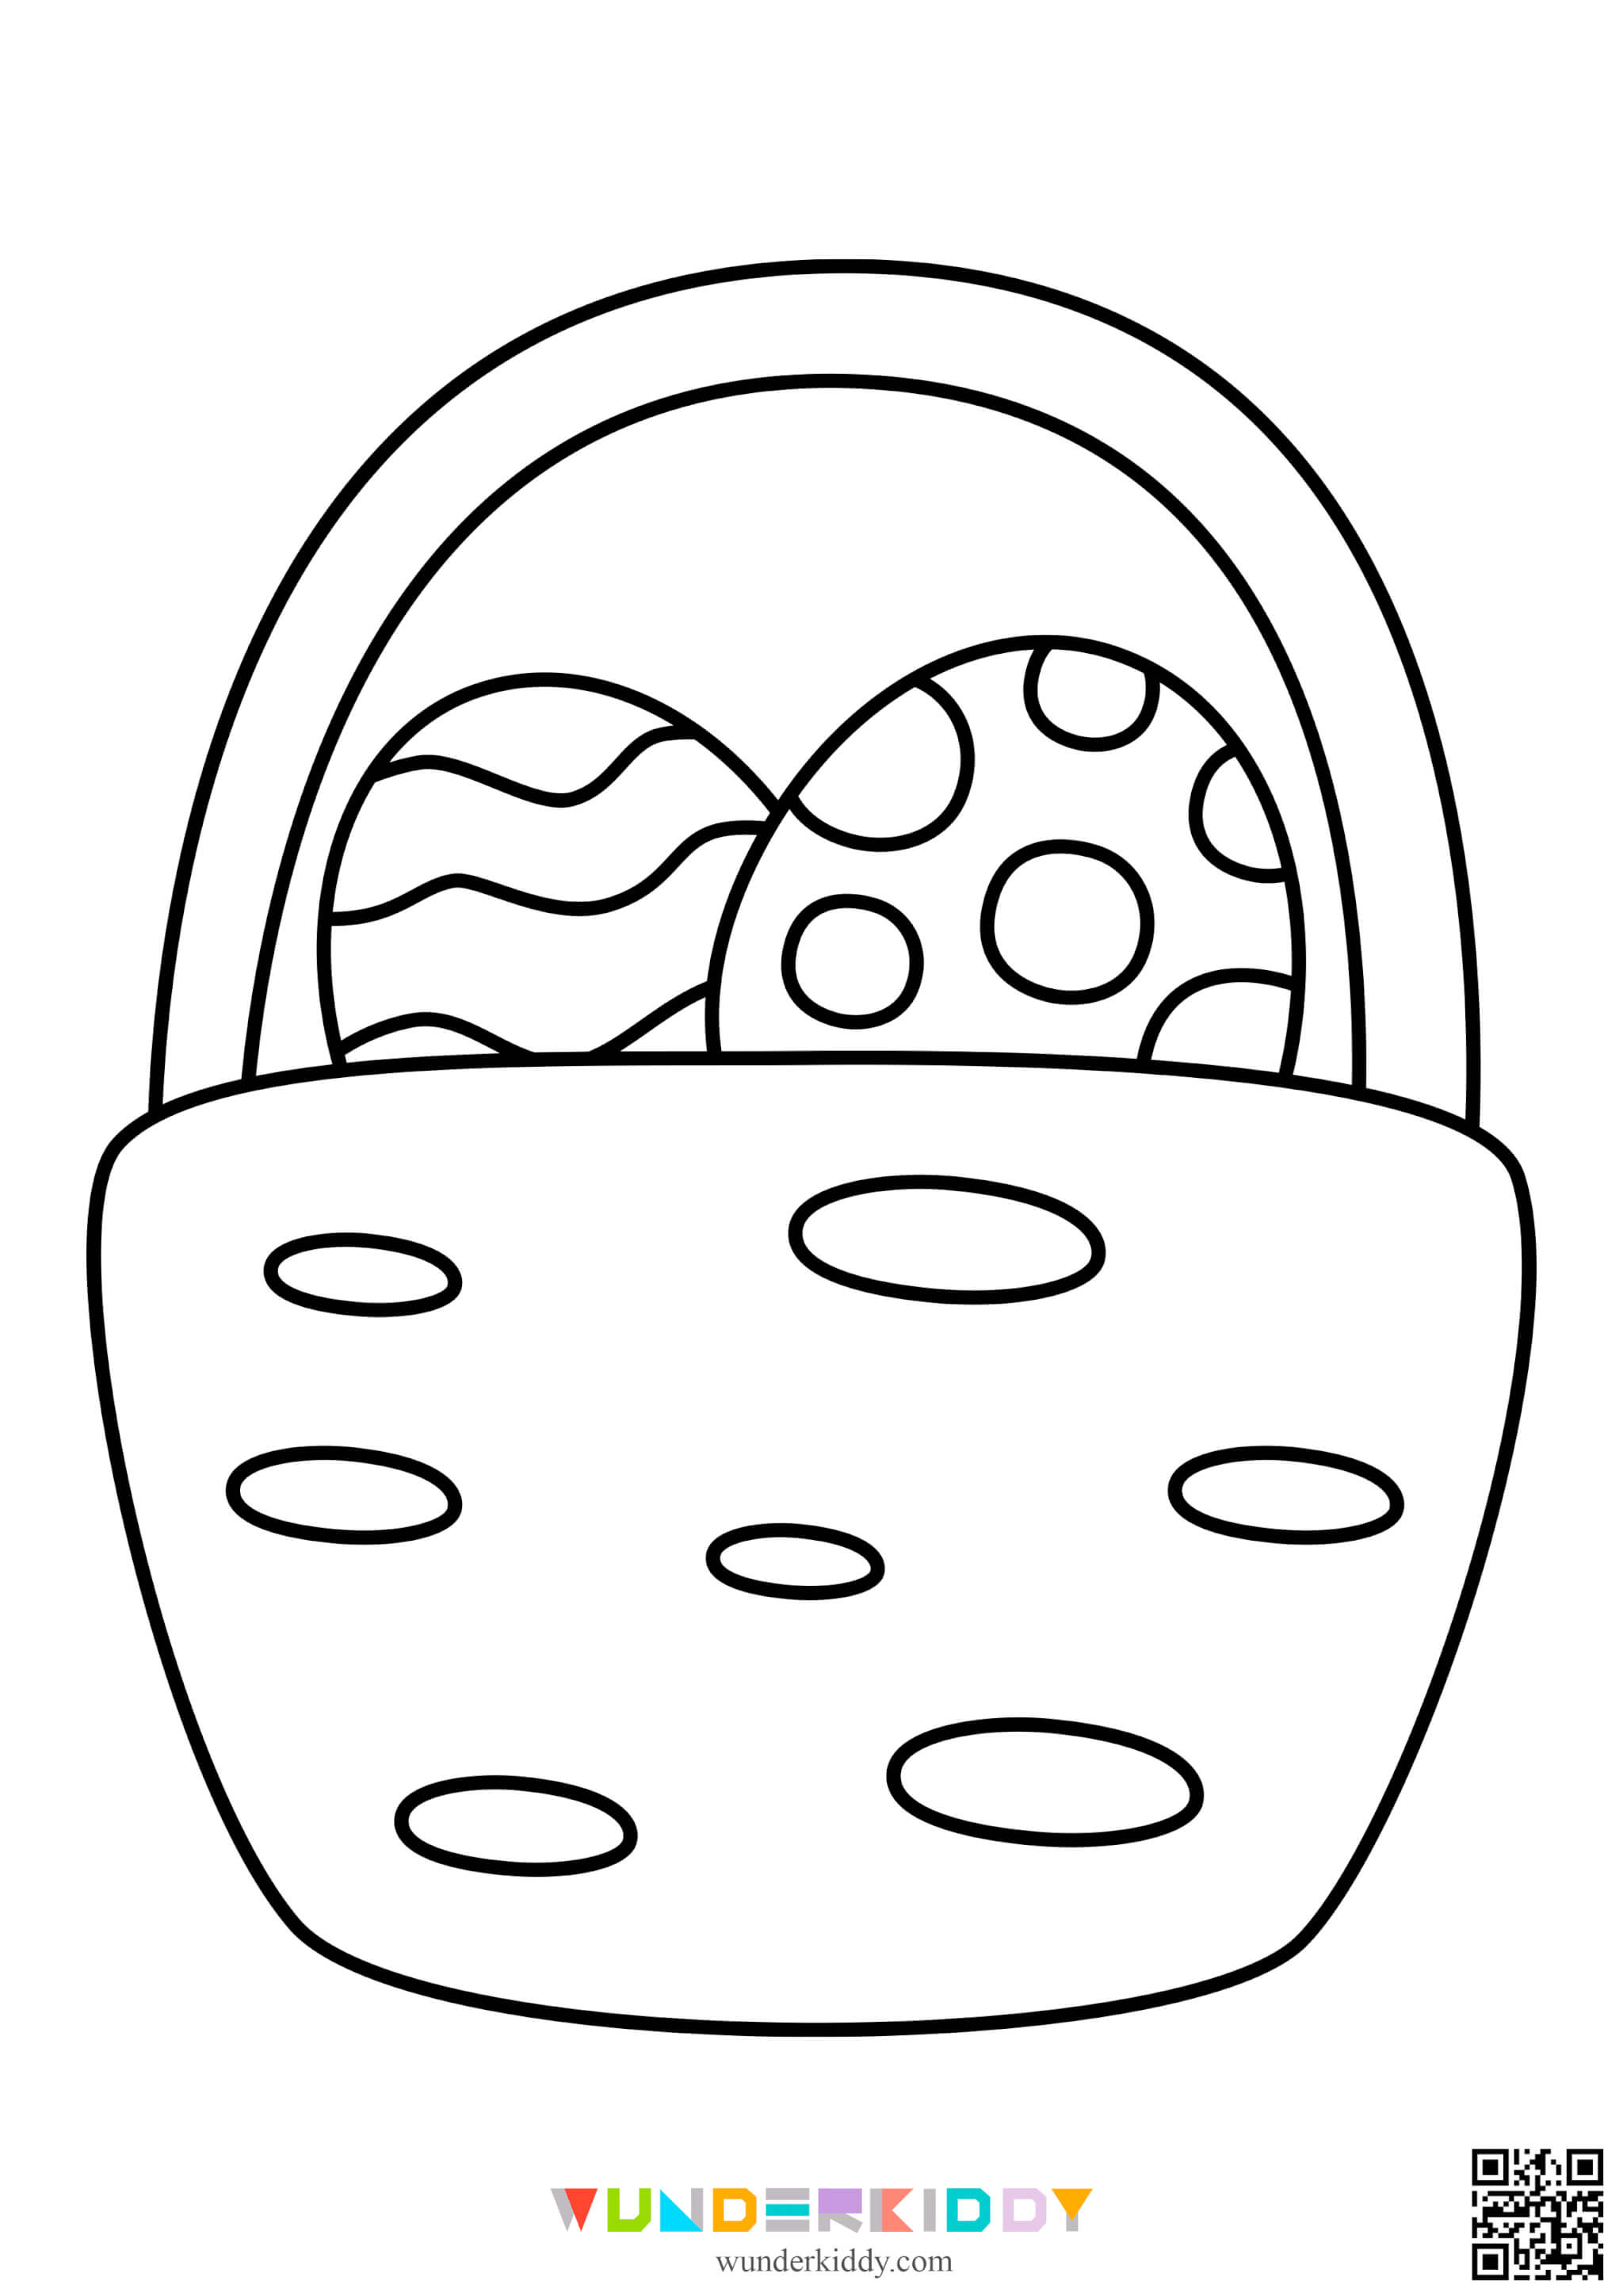 Розмальовки «Великодні яйця» для дітей - Зображення 5